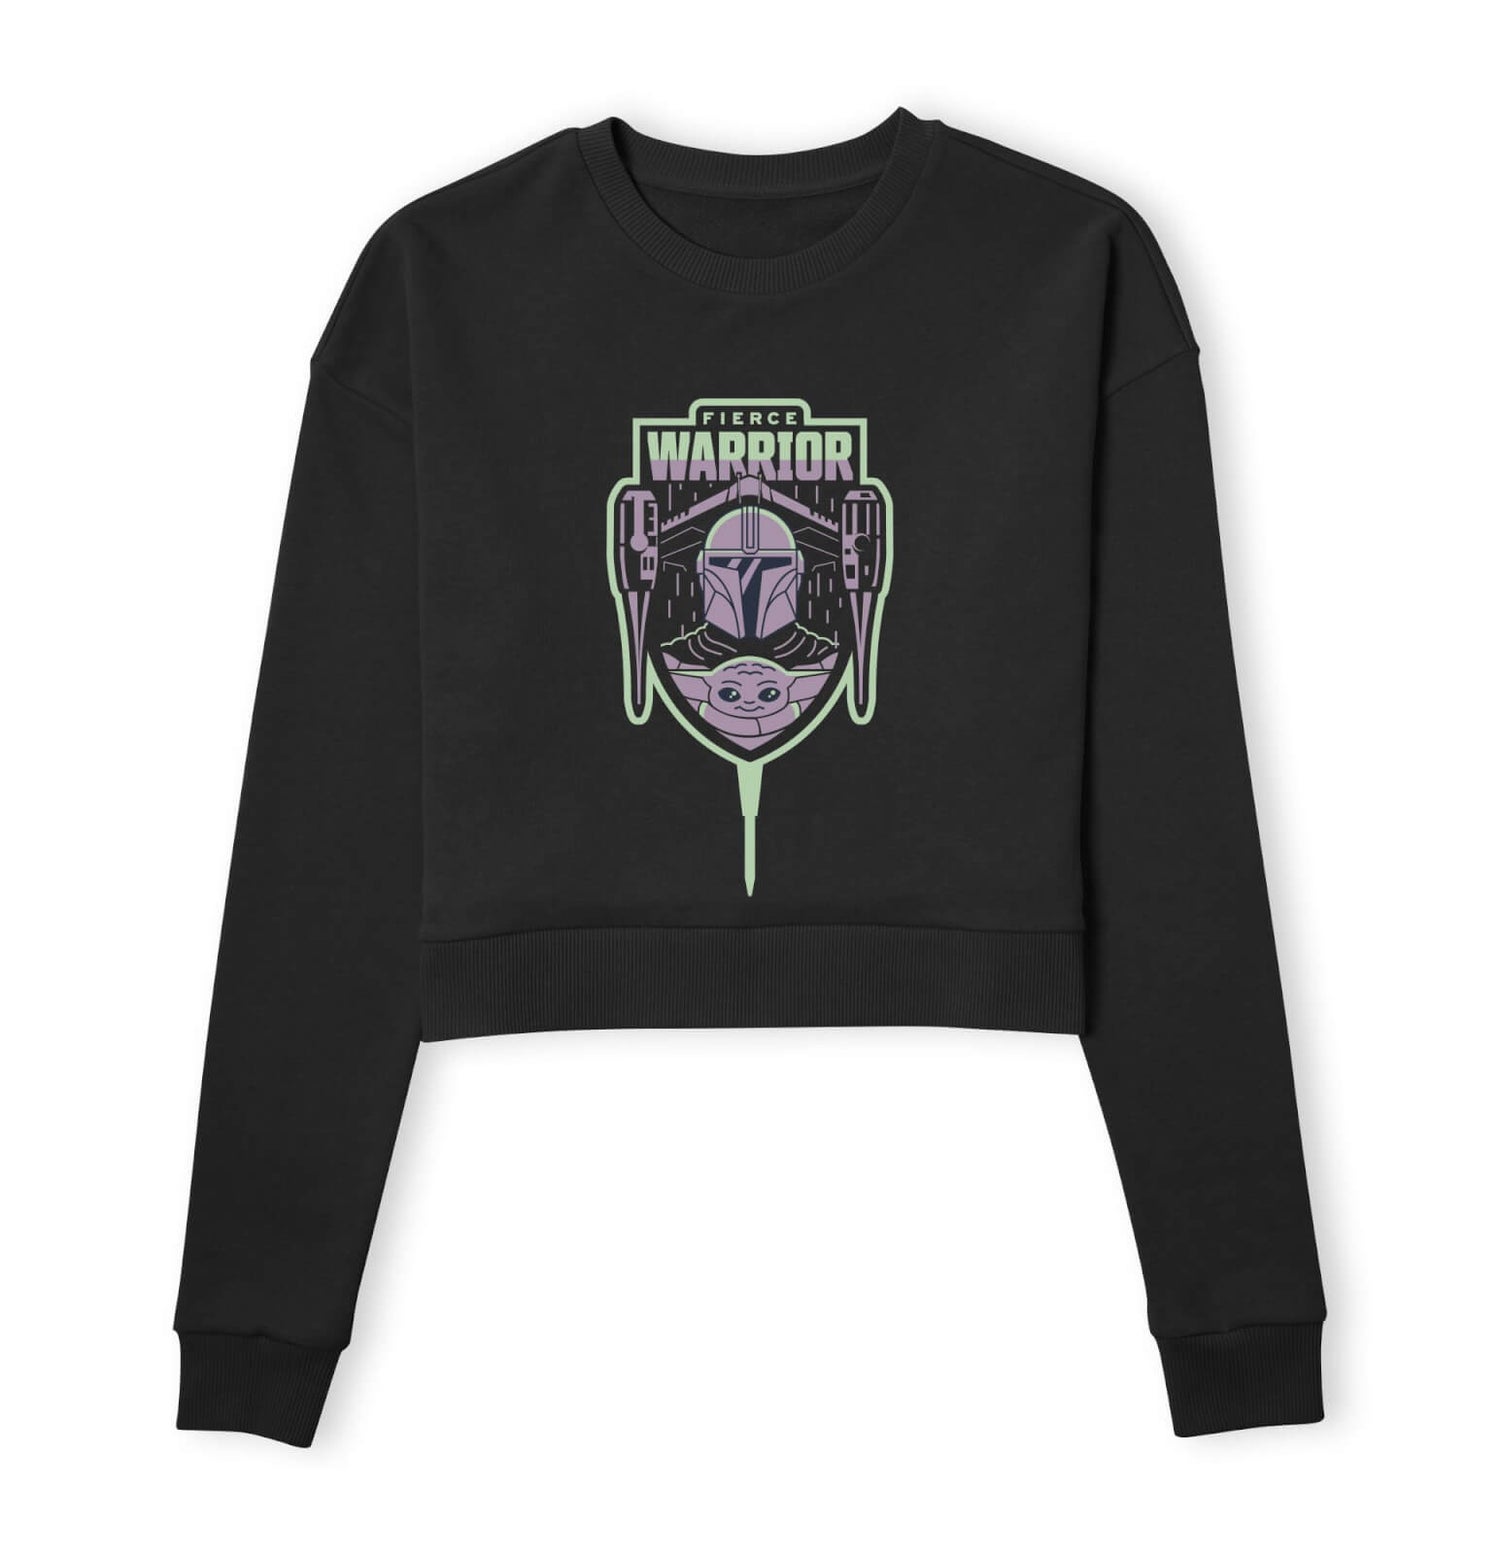 Star Wars The Mandalorian Fierce Warrior Women's Cropped Sweatshirt - Black